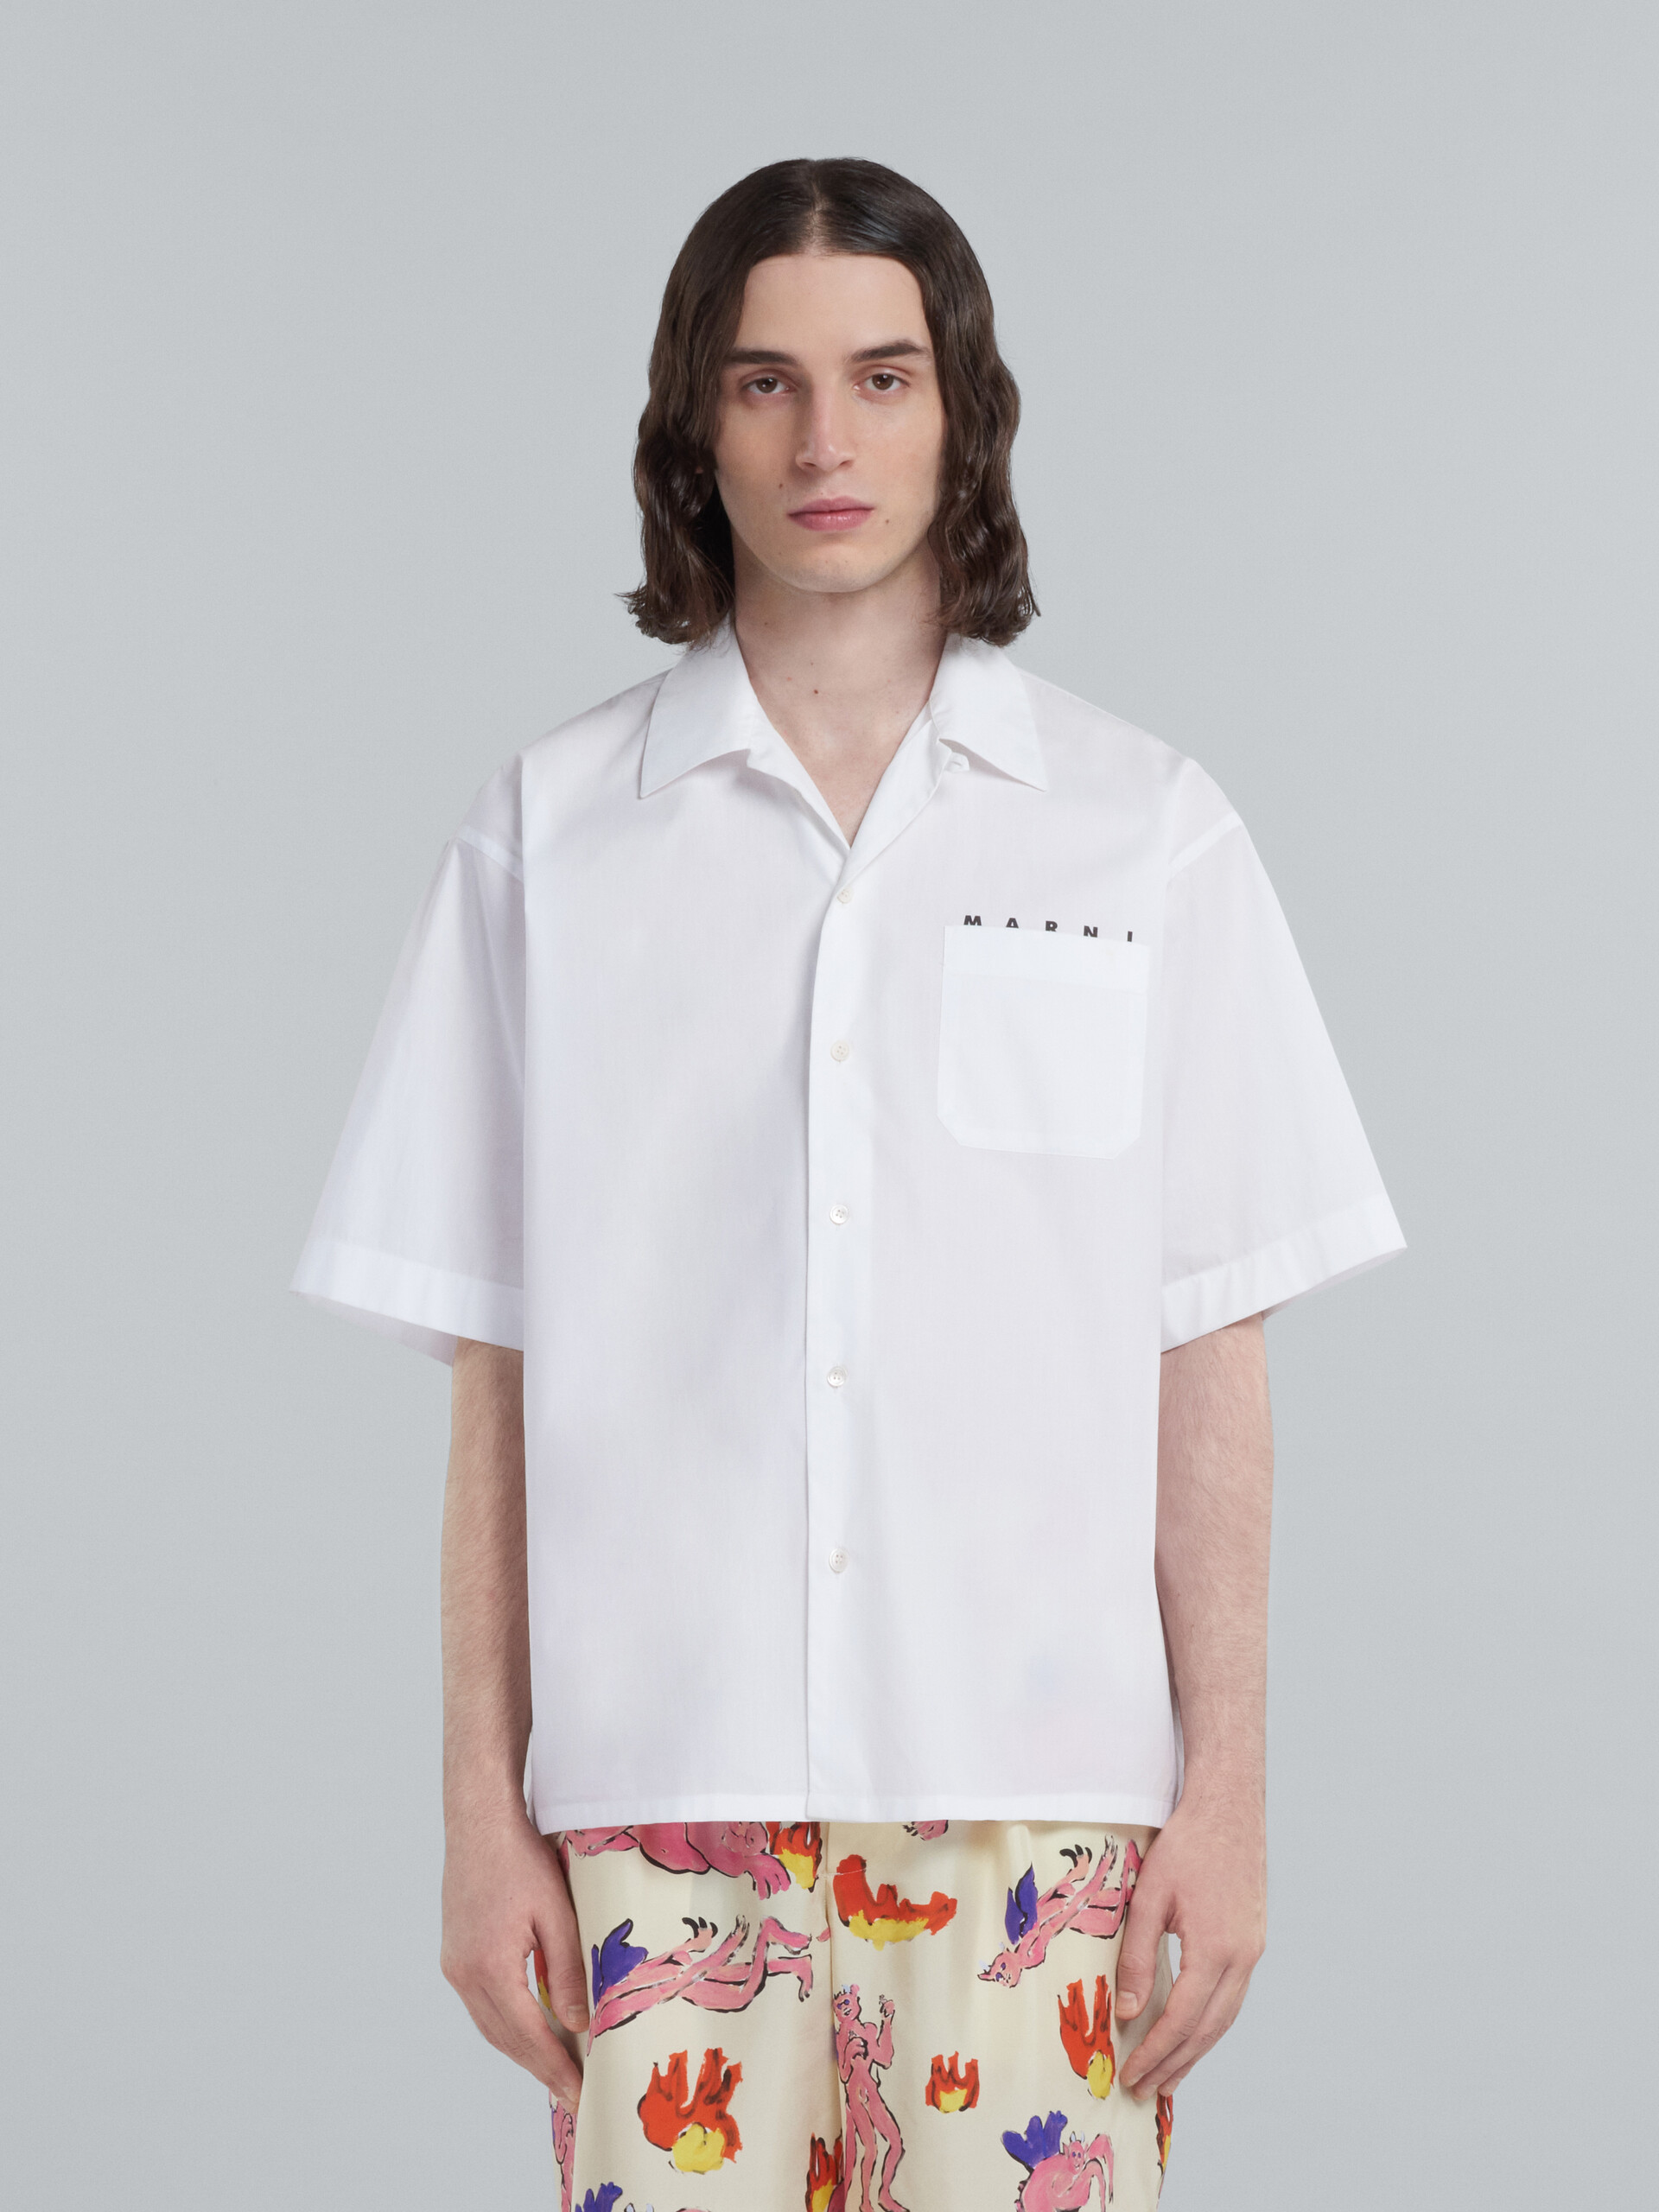 Camisa de bolos de popelina ecológica blanca teñida en el hilo - Camisas - Image 2